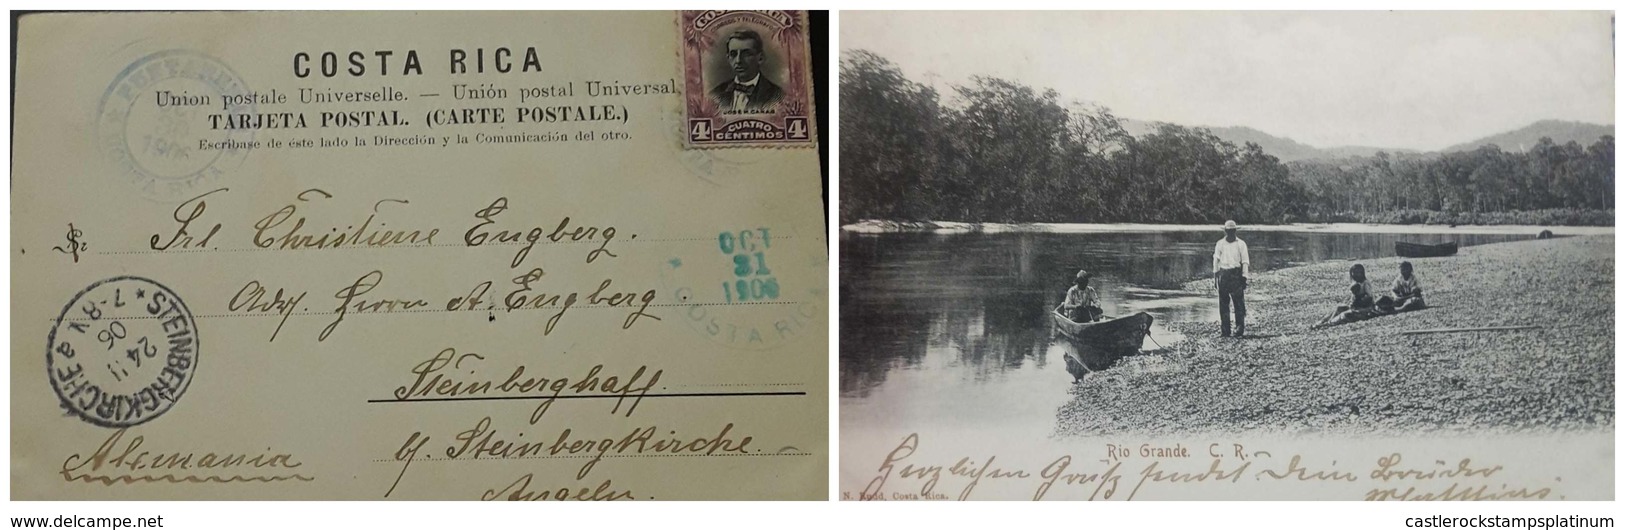 O)1904  COSTA RICA,  JOSE M. CAÑAS - SCT 55 4c, RIO GRANDE POSTAL CAR - LANDSCAPE, POSTAL CARD - STEINBERGKIRCHE - Costa Rica